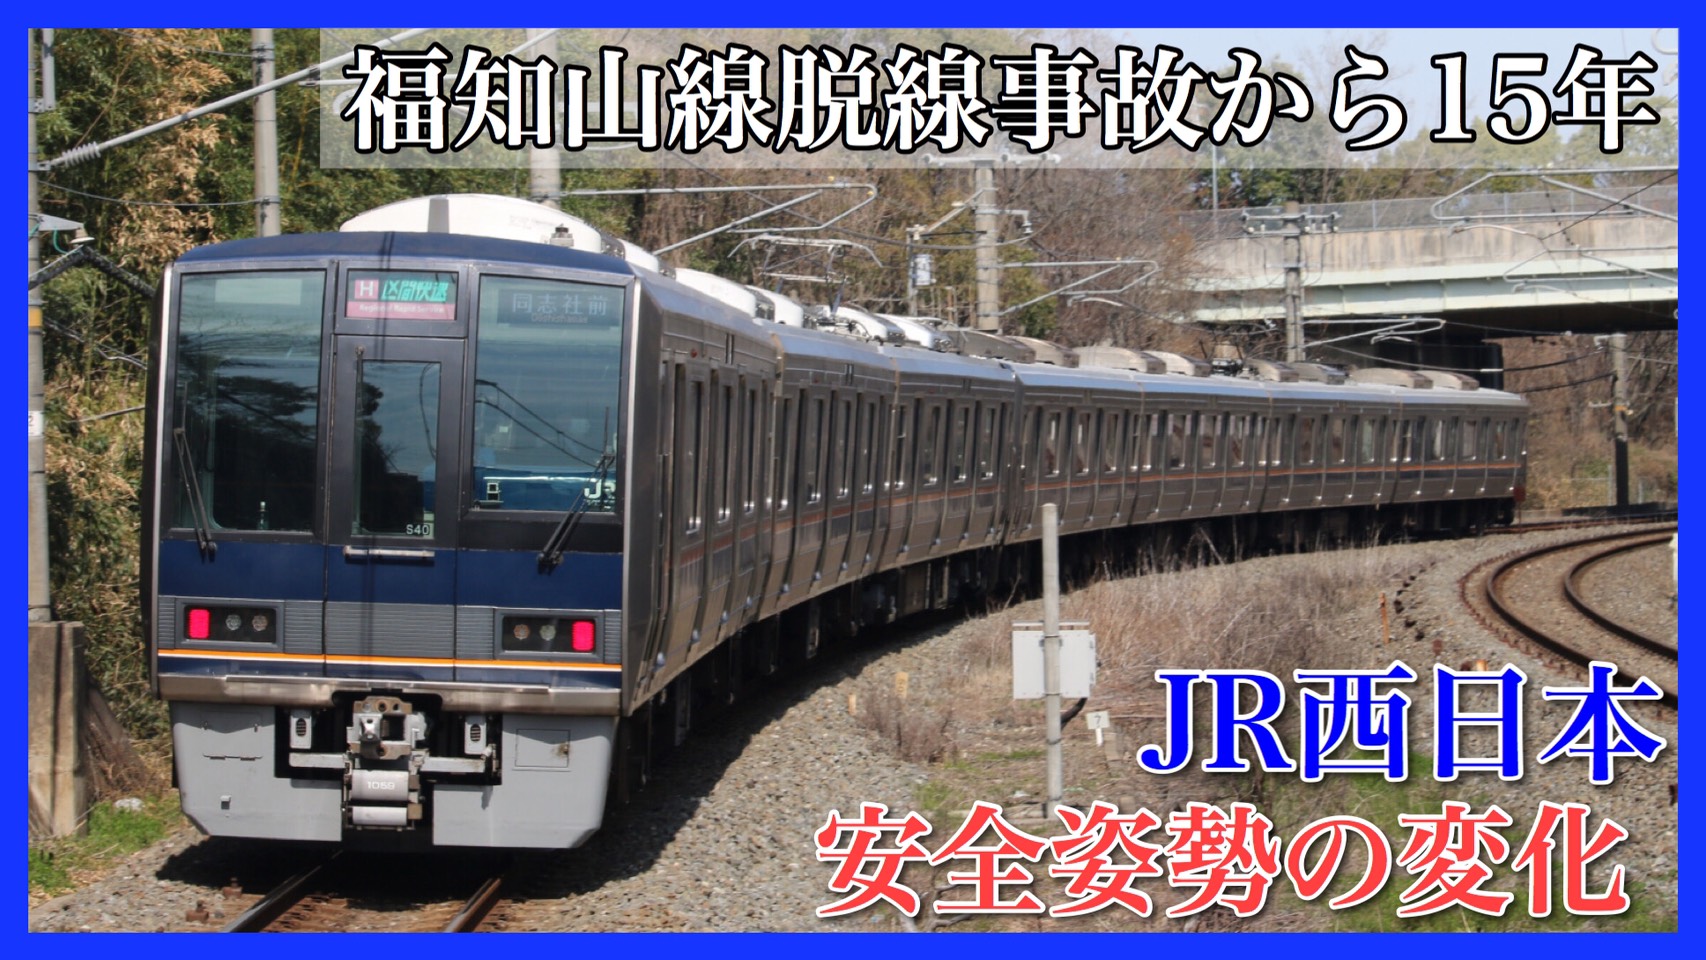 福知山線脱線事故 発生から15年 Jr西日本の安全対策の変化を振り返る